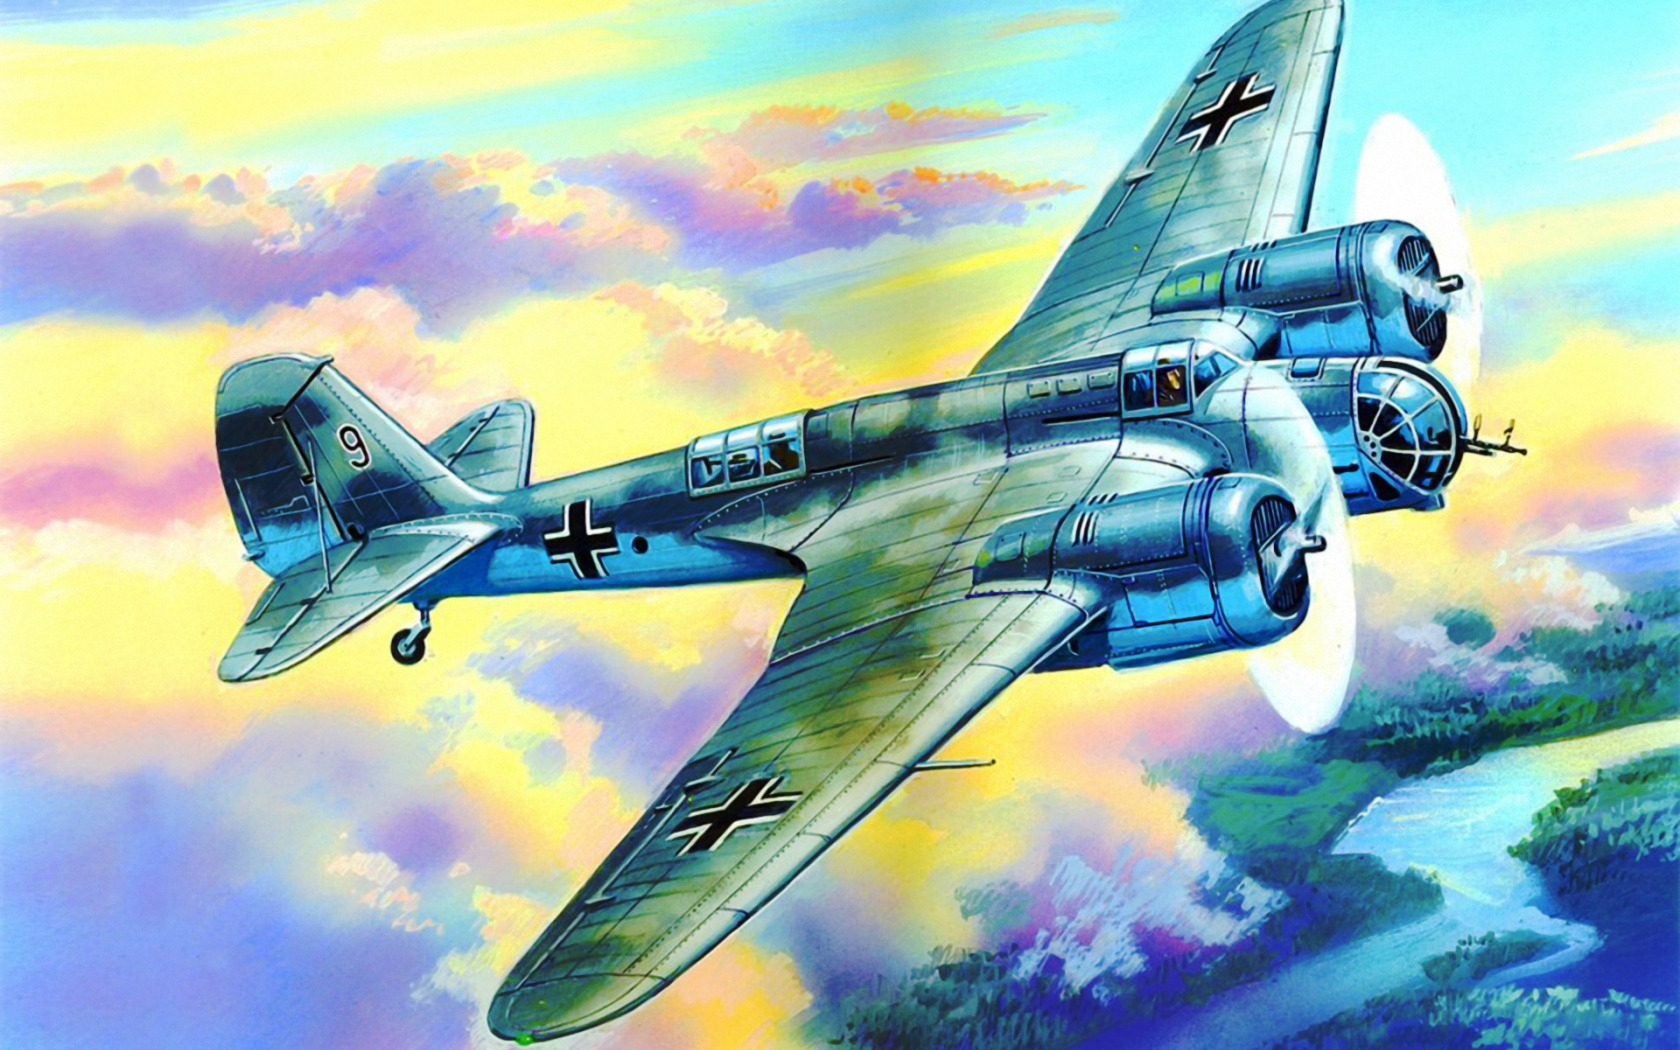 avia-b-71-ww2-war-art.jpg